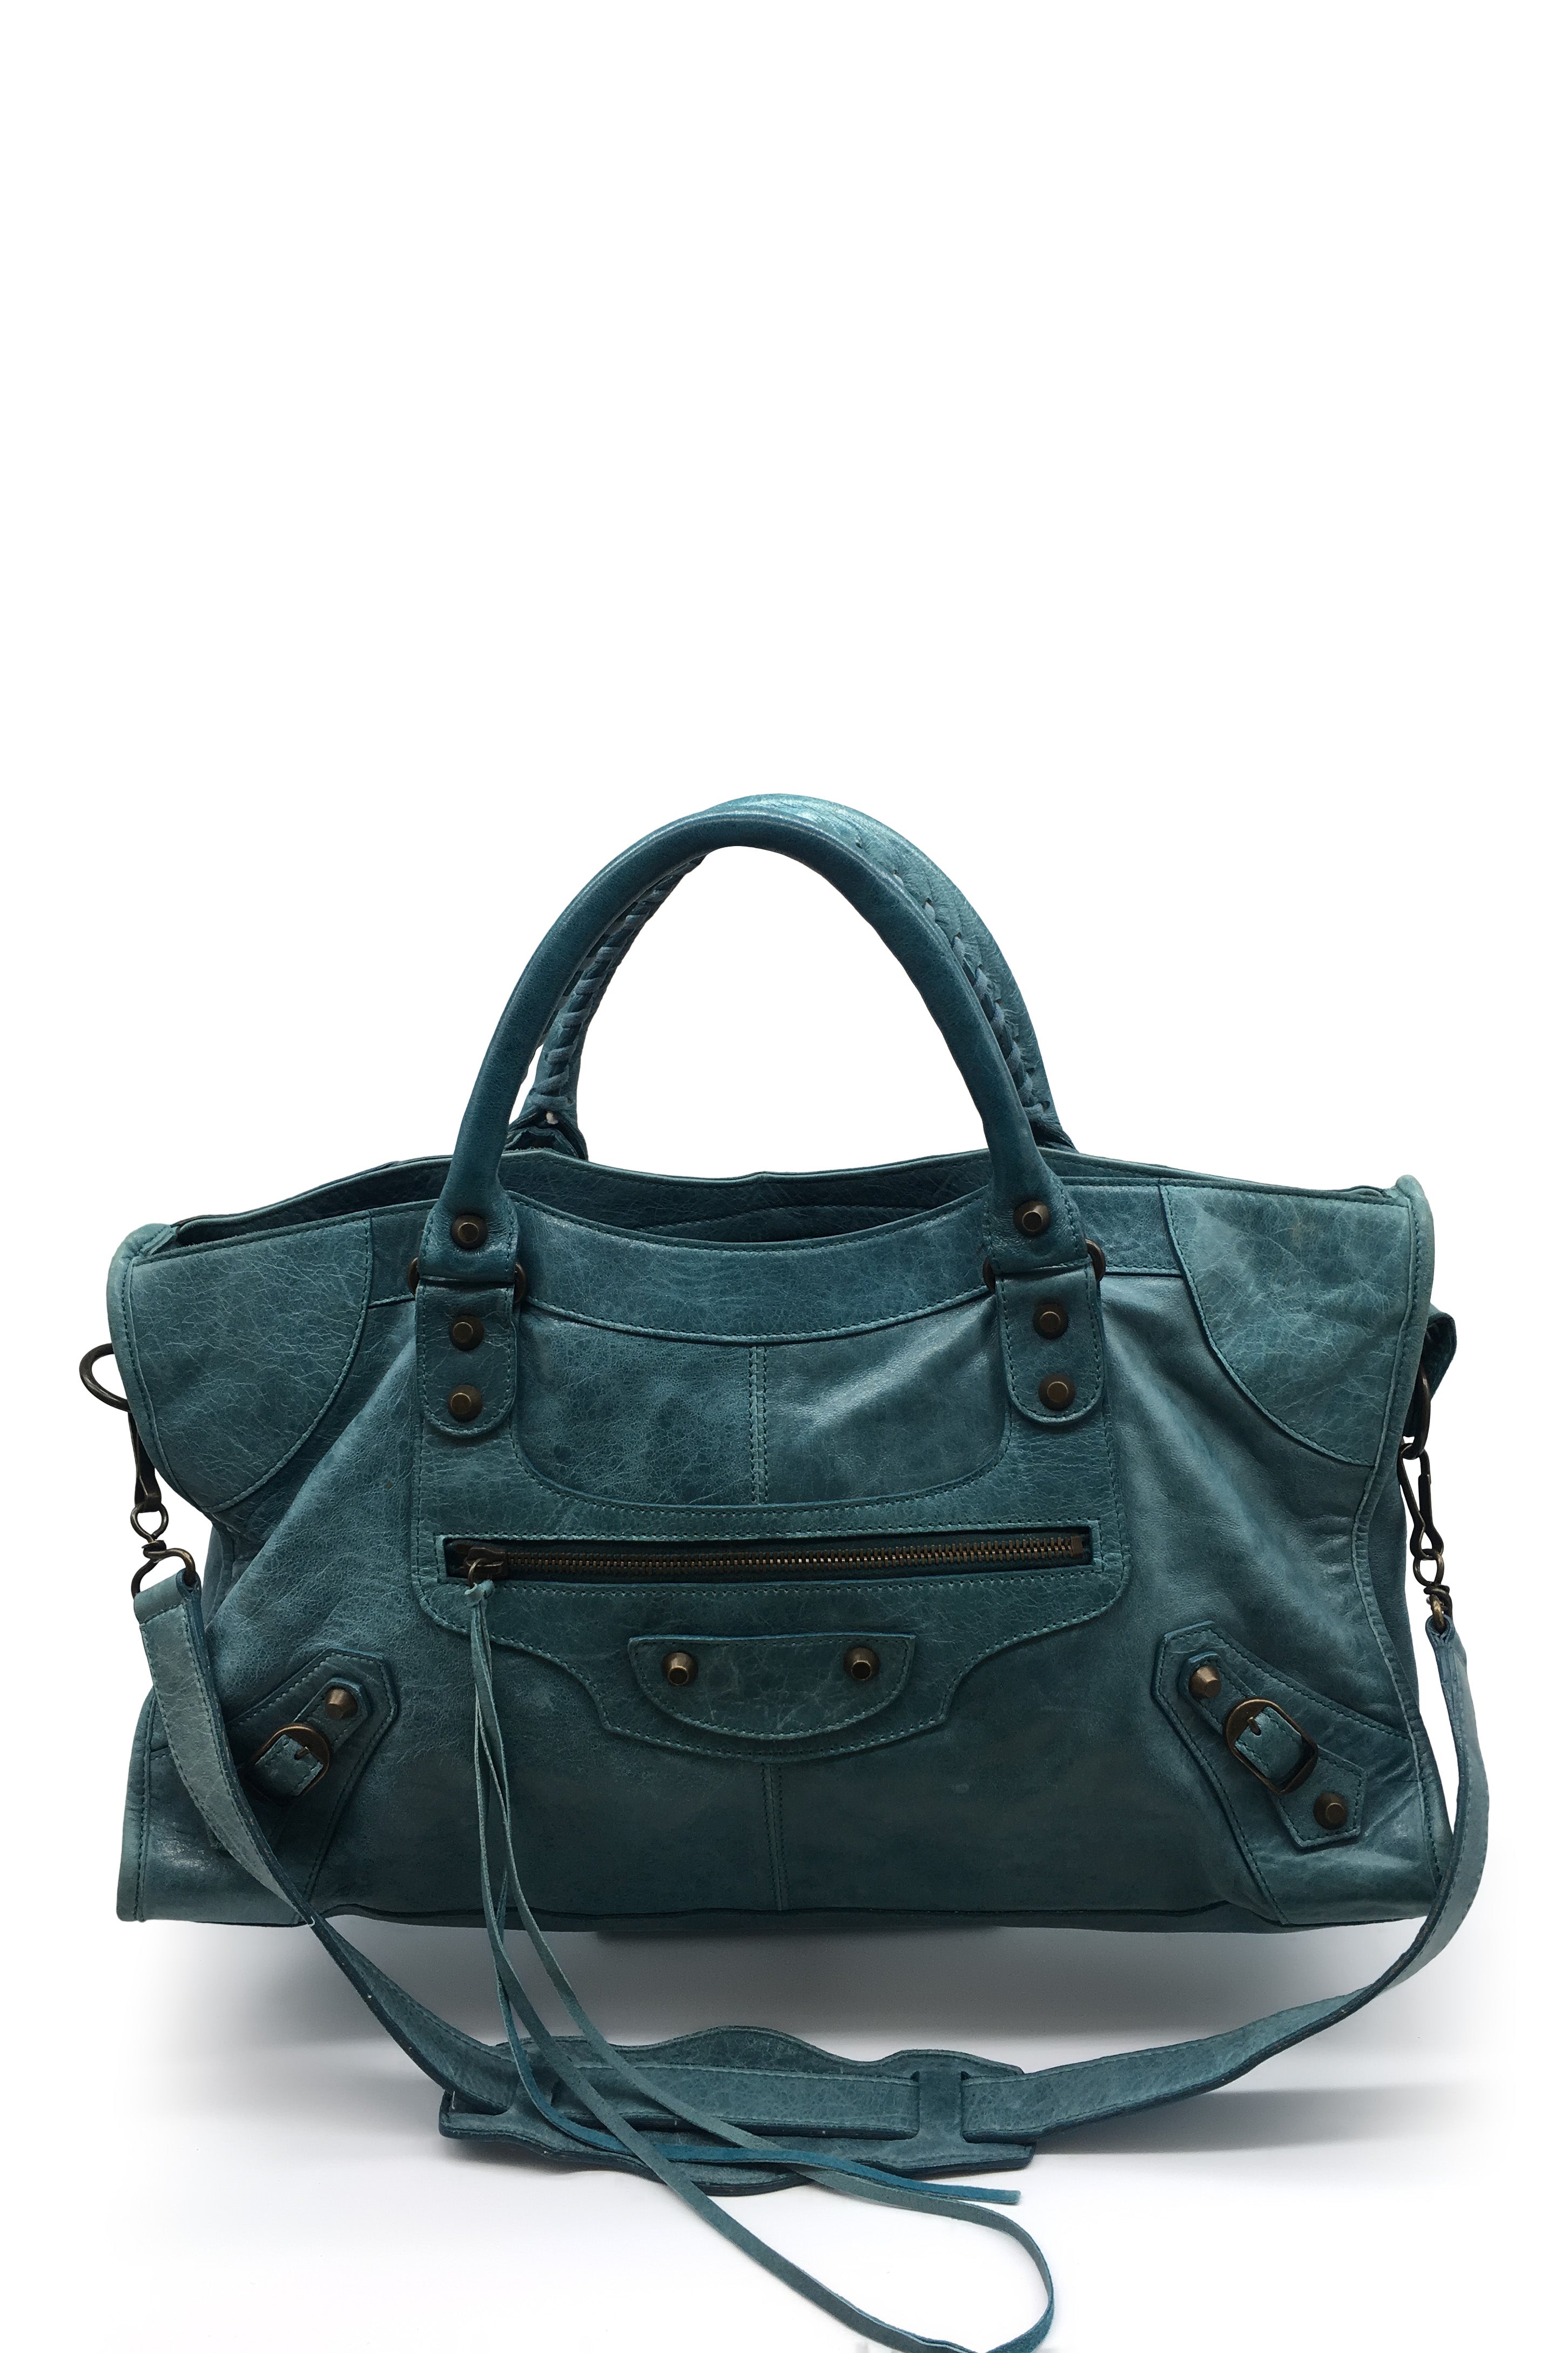 Balenciaga Small B Bag in Turquoise